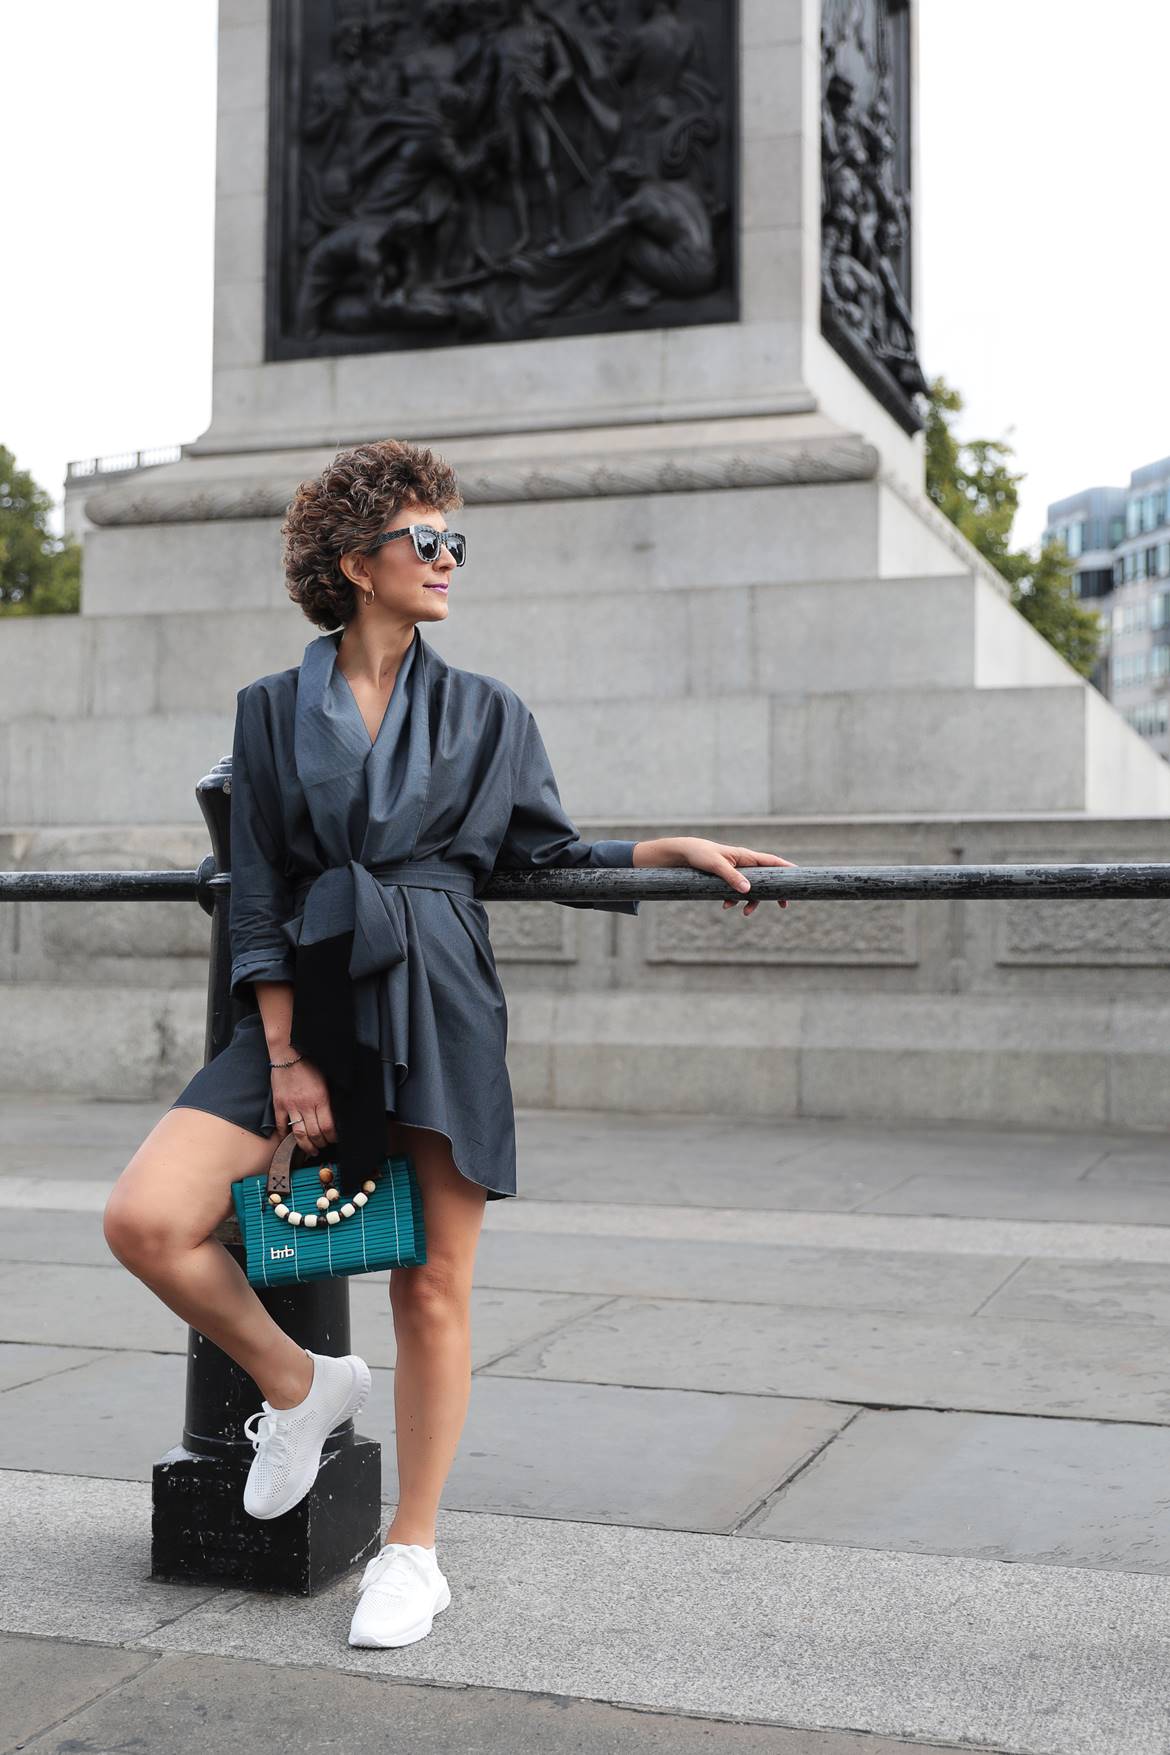 Elisavet kapogianni, London Fashion Week street style 2019, Think Feel Discover